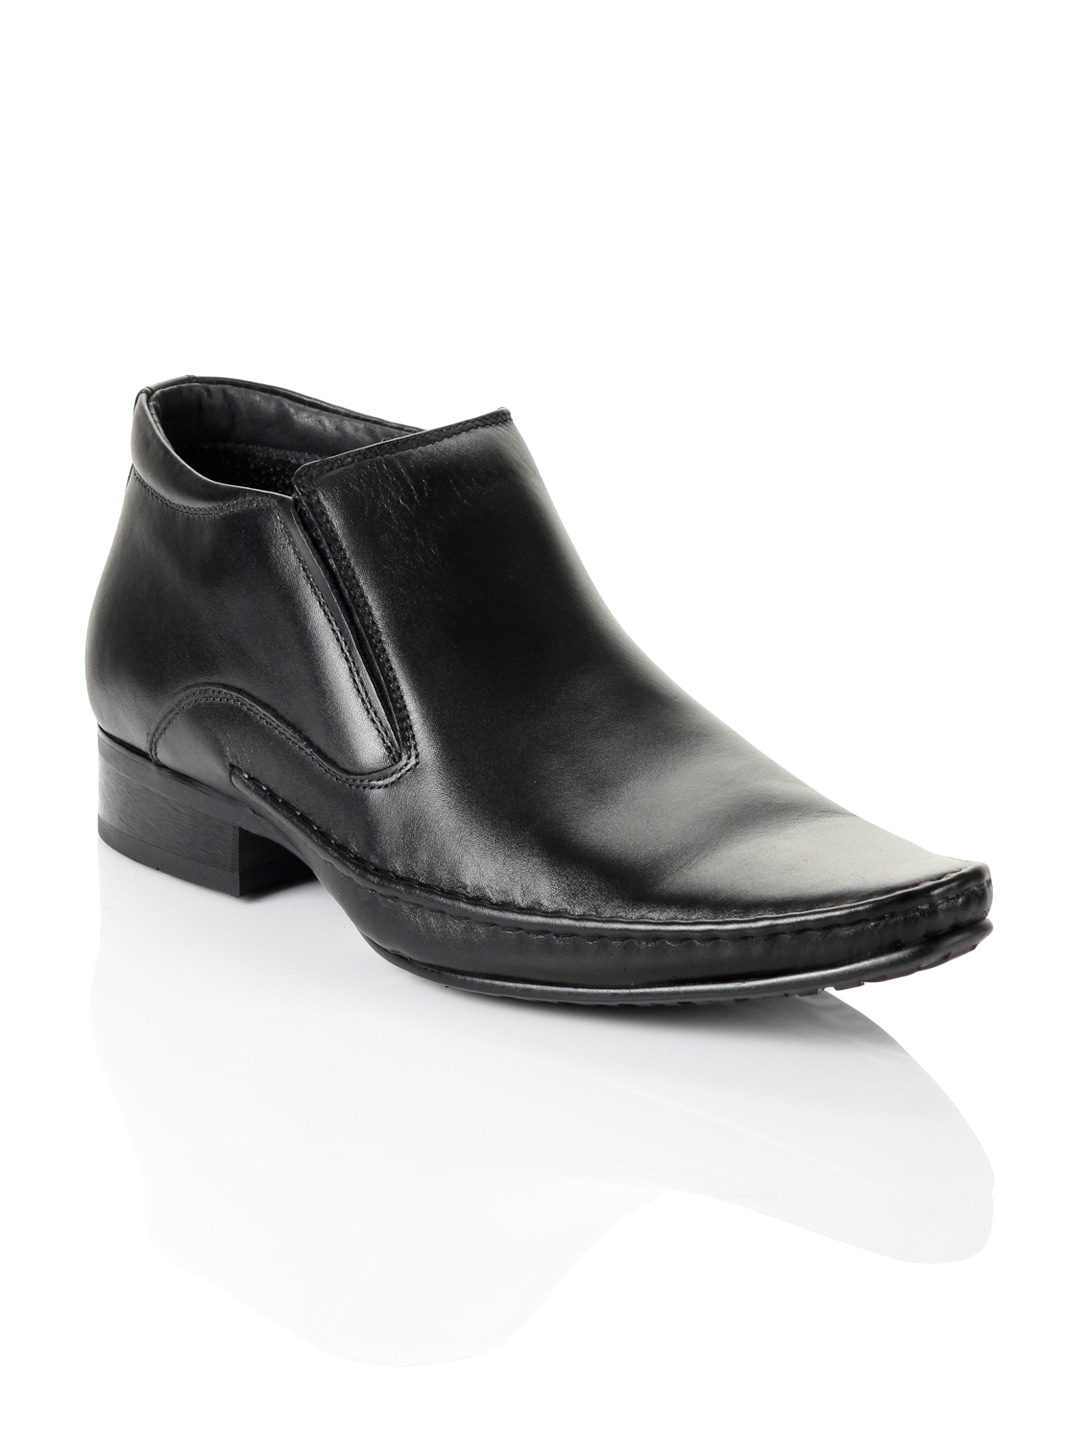 Cobblerz Men Black Leather Semi-Formal Shoes